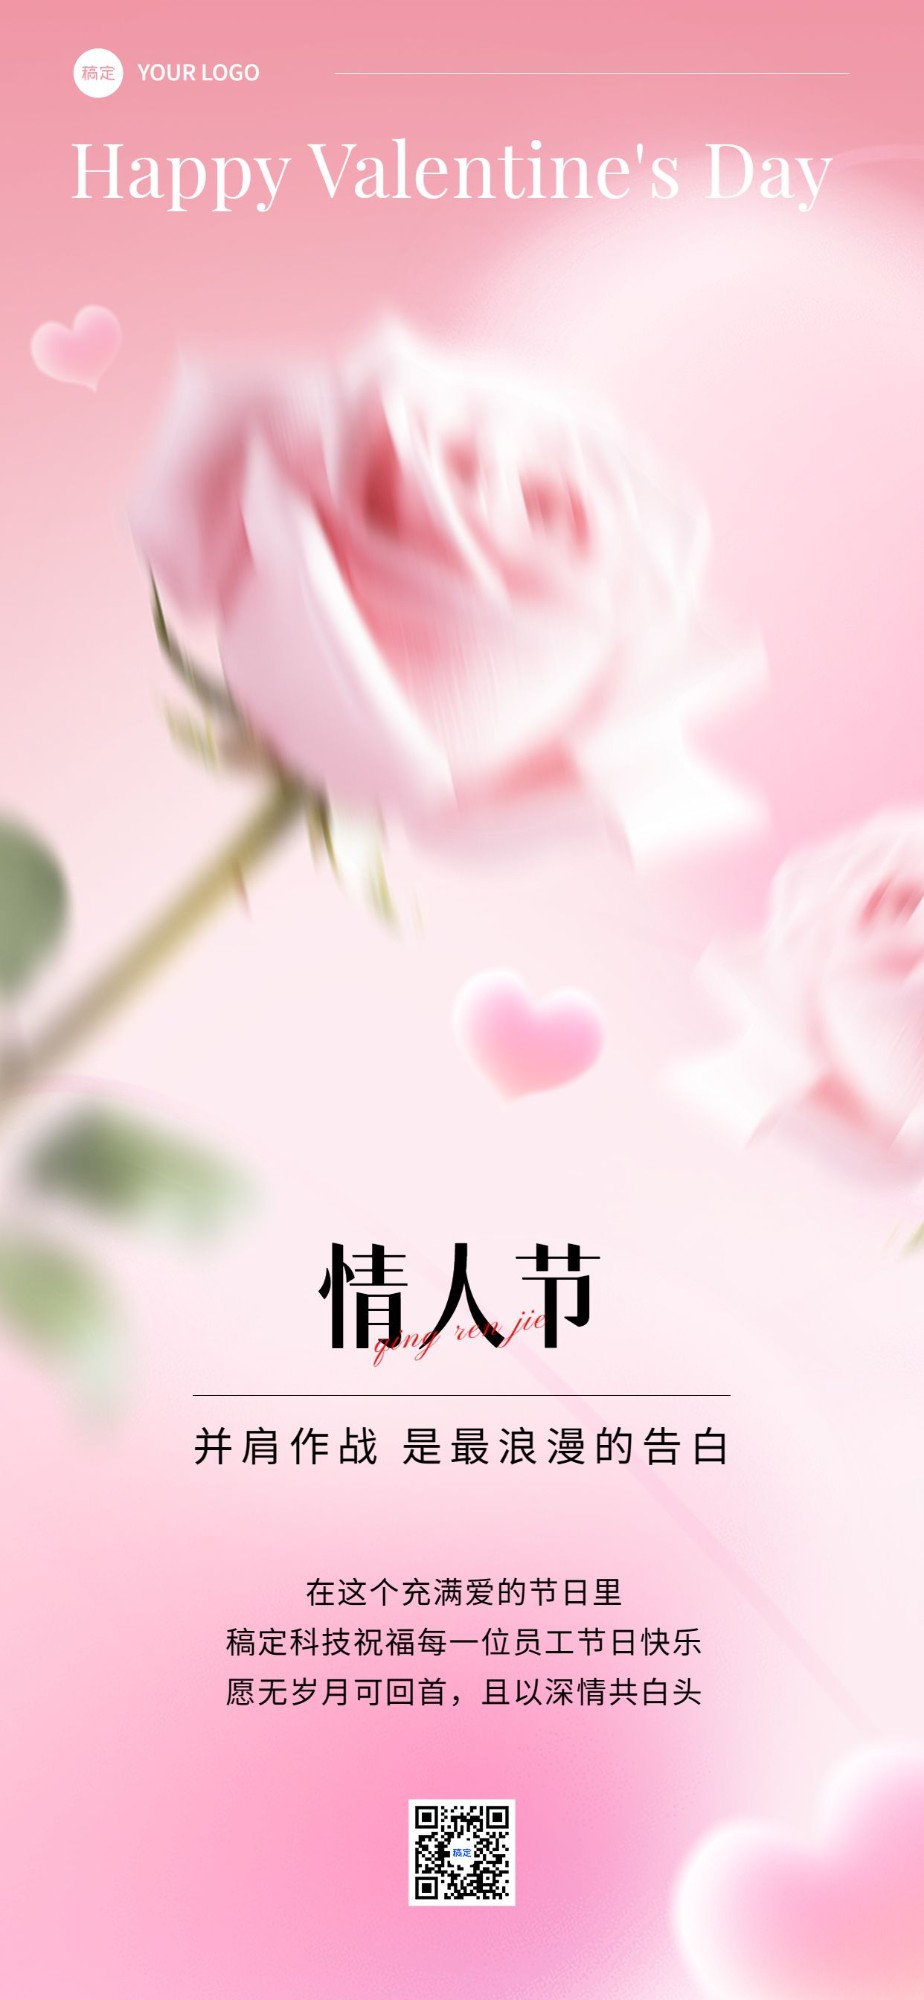 企业情人节节日祝福贺卡弥散光风全屏竖版海报